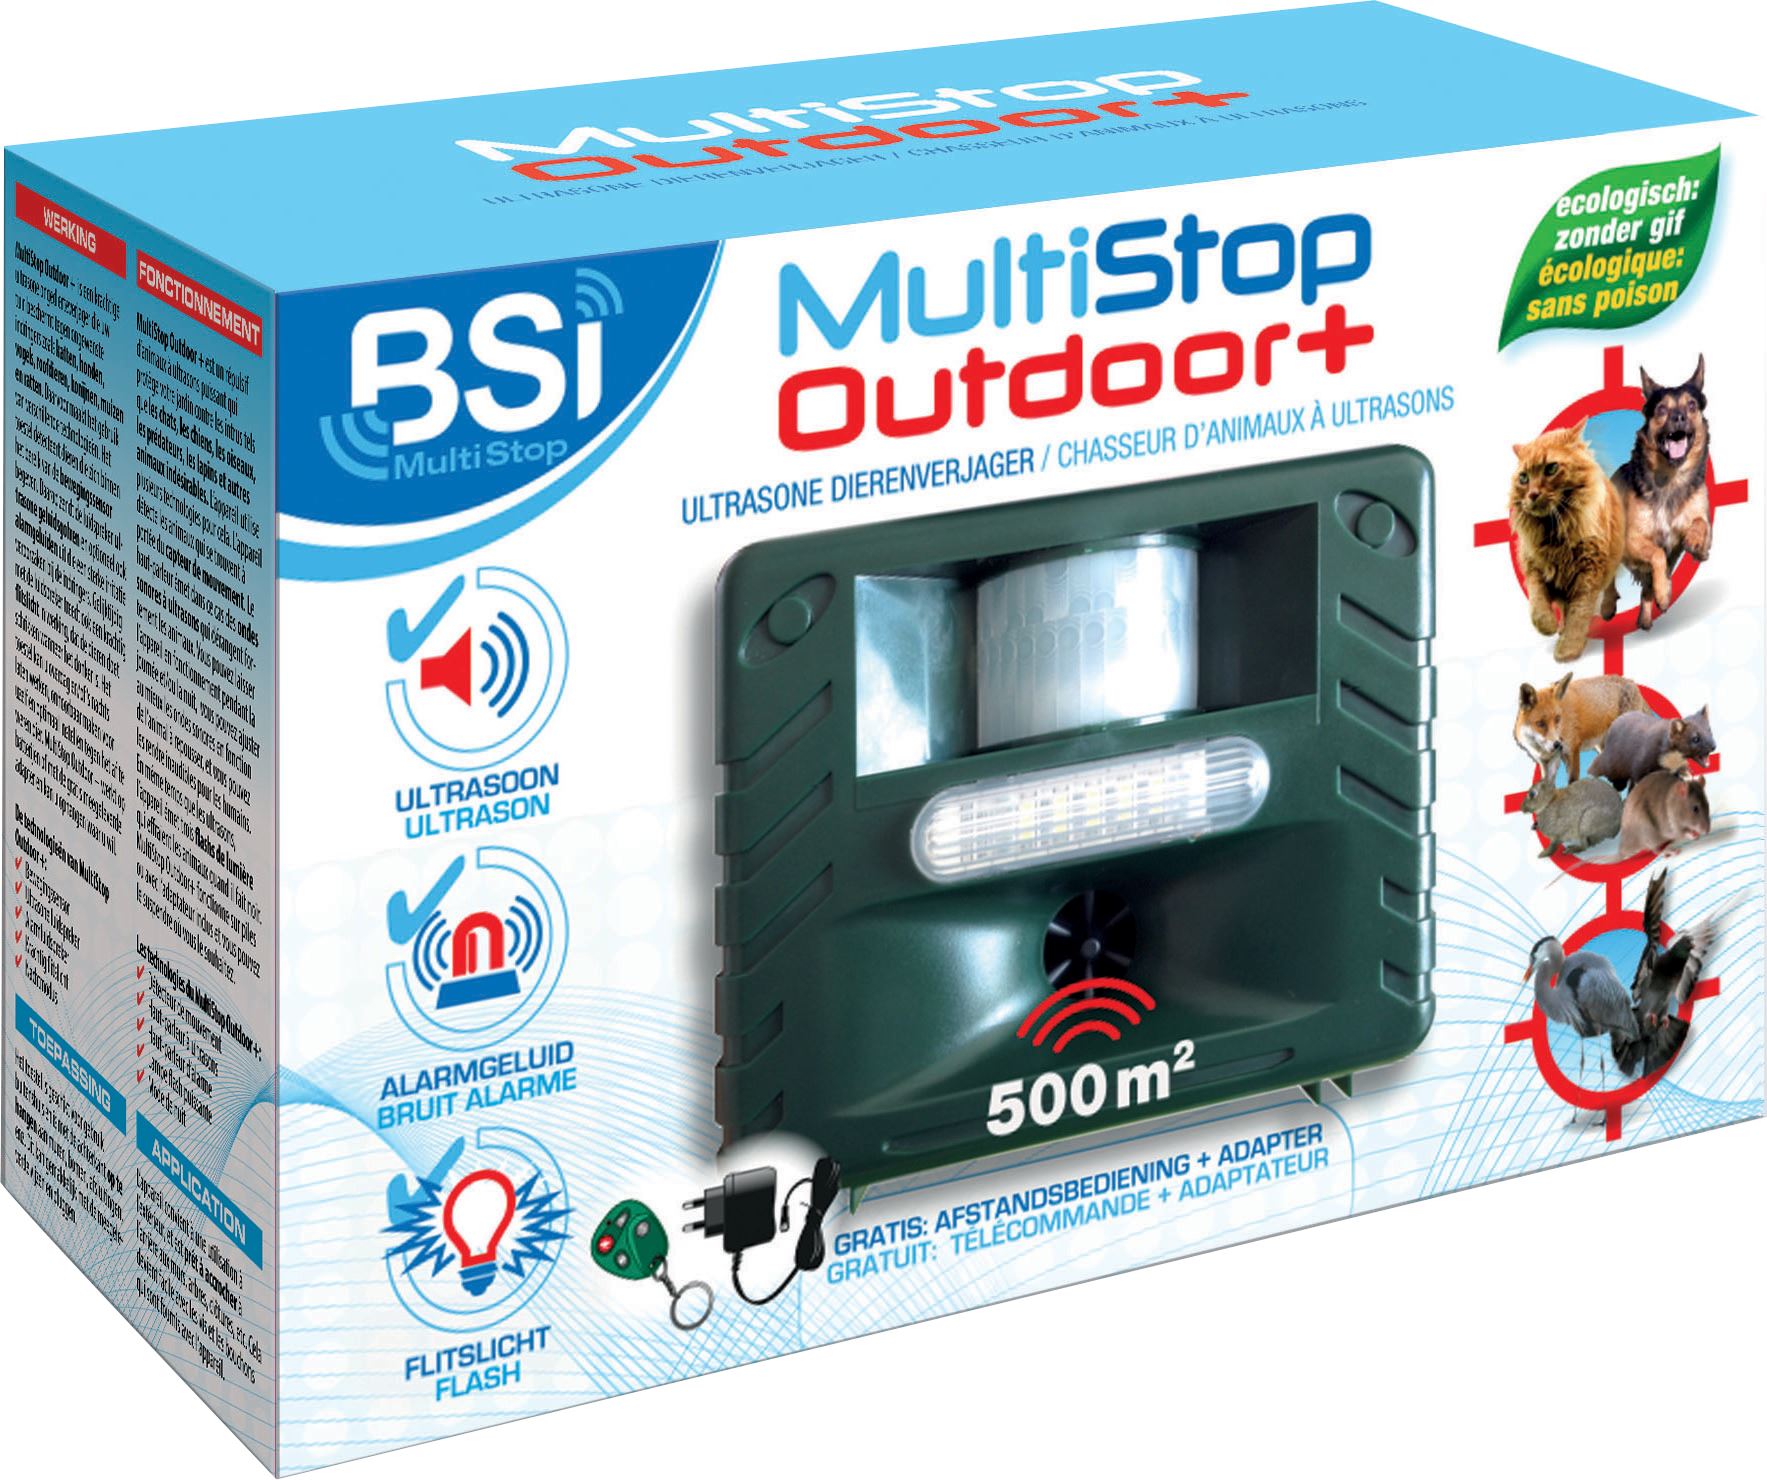 Multistop-outdoor-adapter-Ongedierteverjager-op-ultrasonen-alarmgeluid-en-flitslicht-tot-500m-